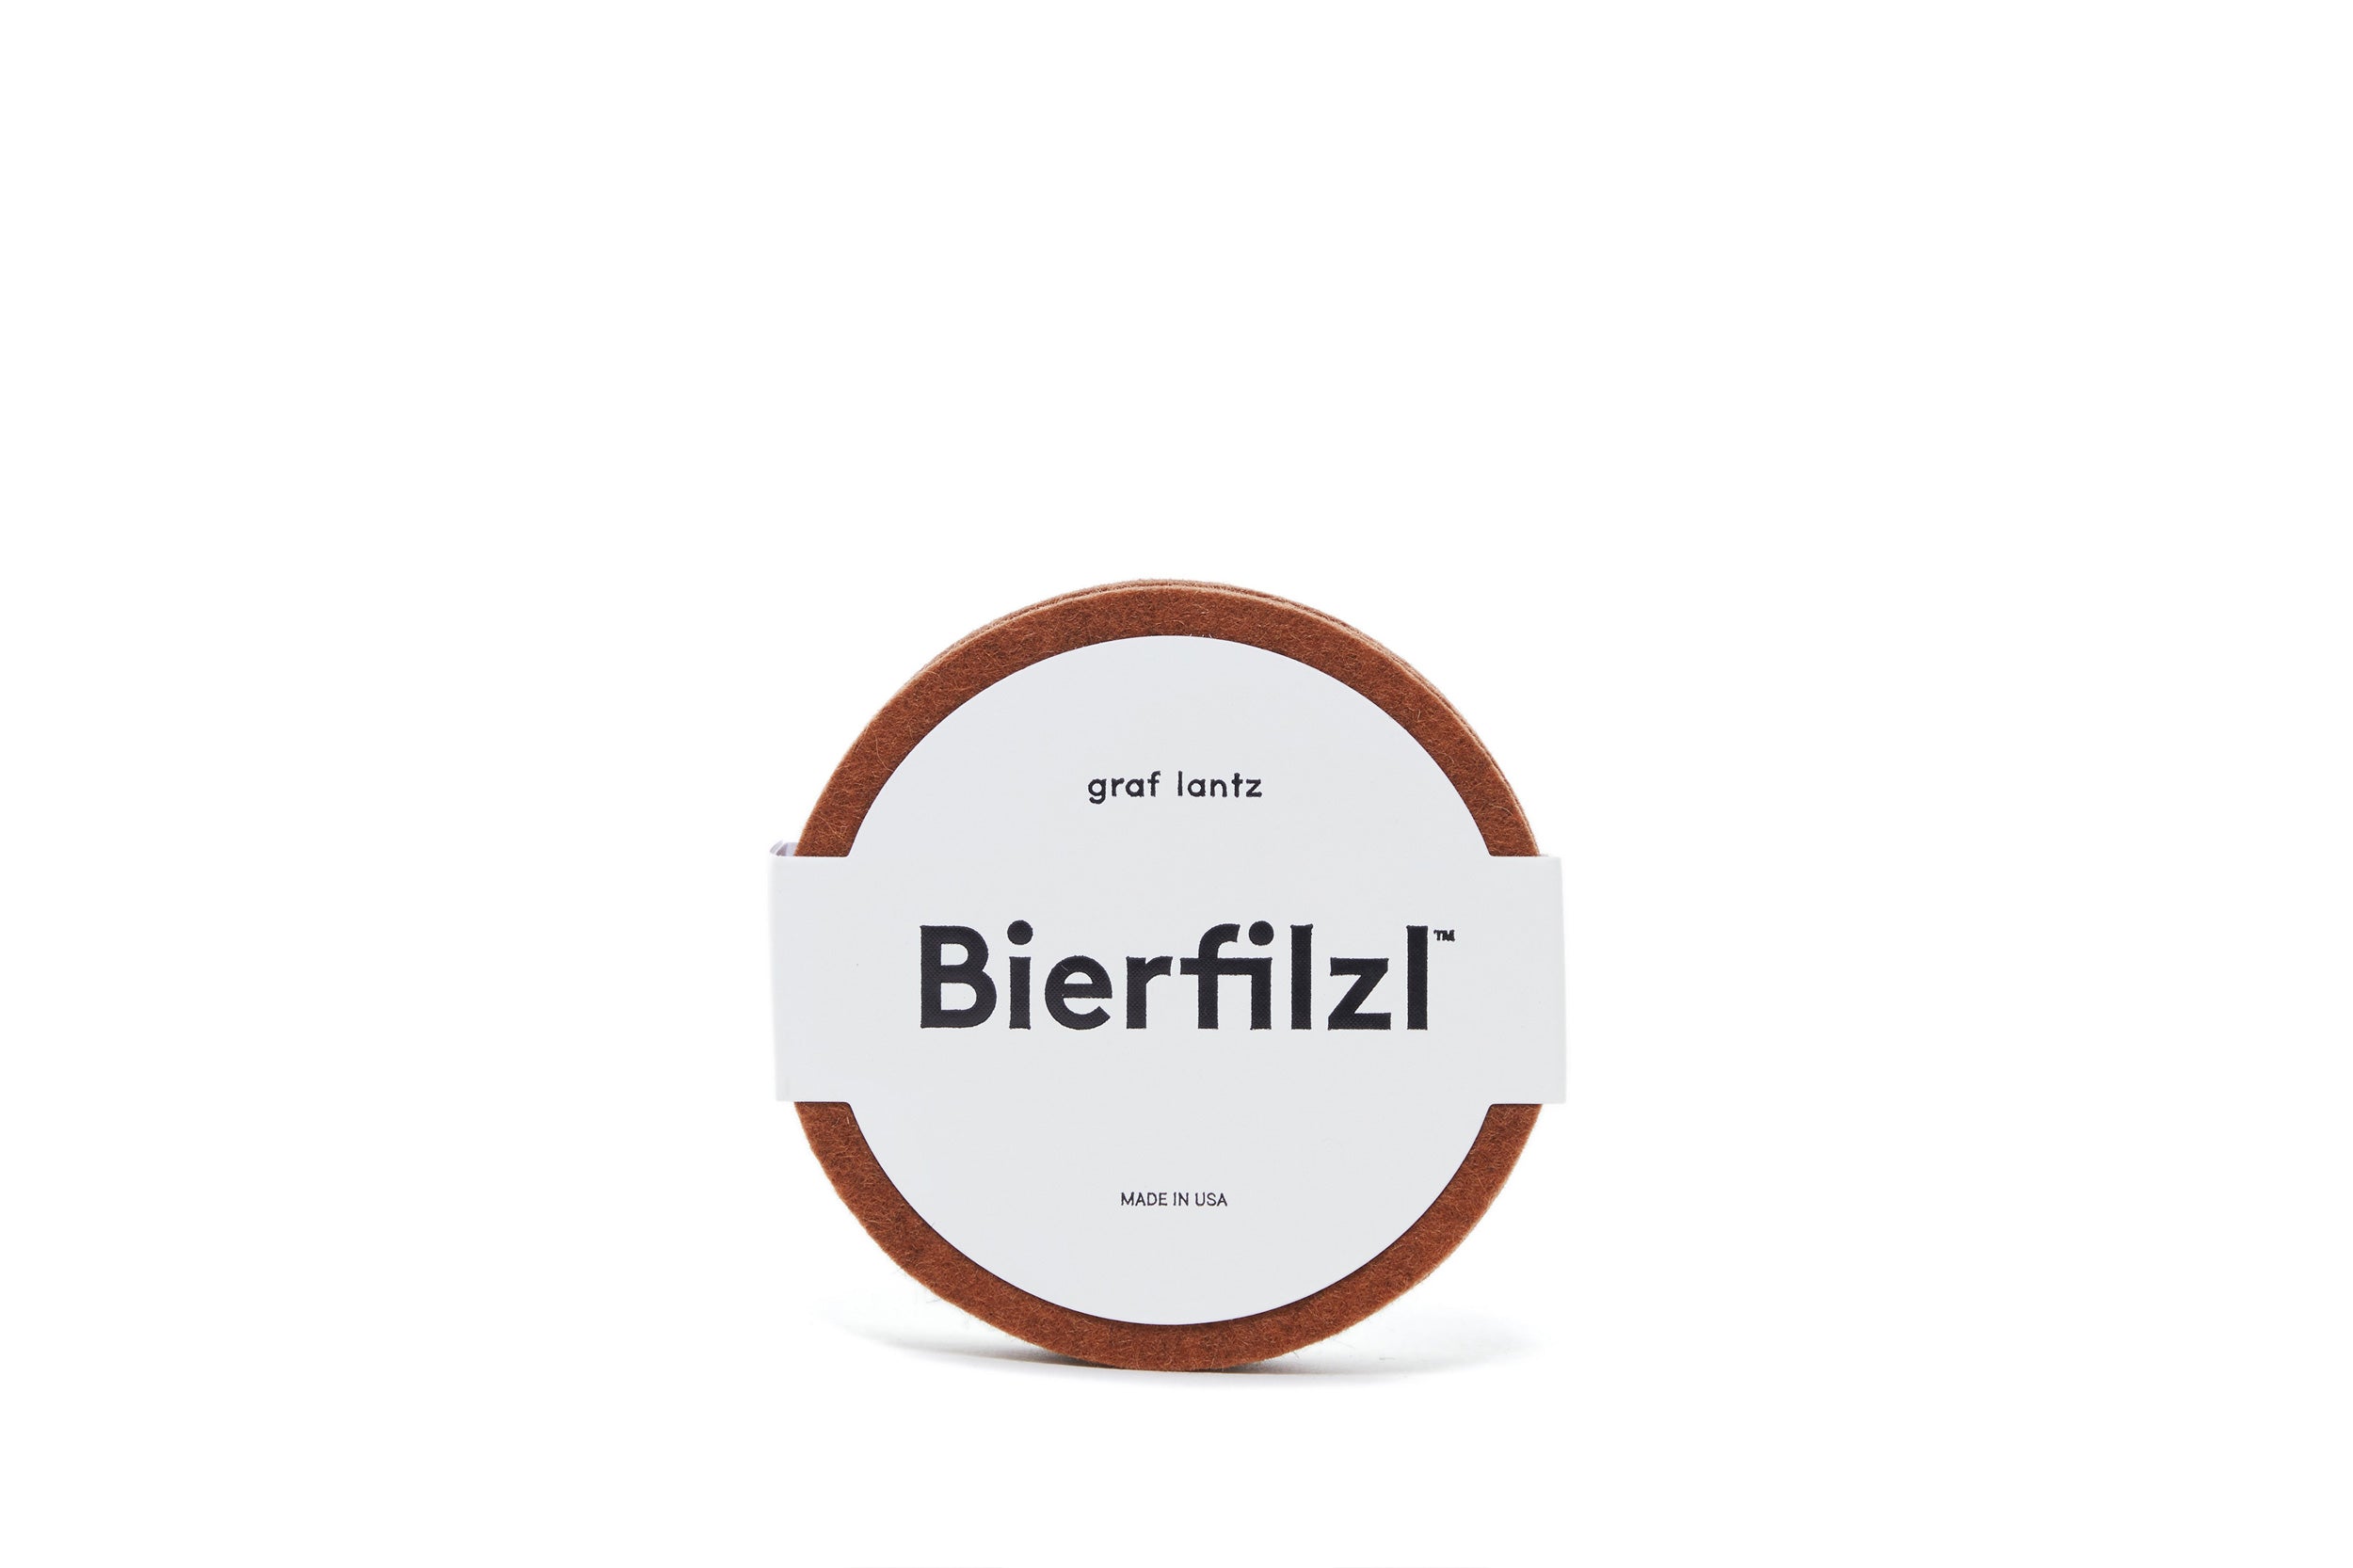 Graf Lantz-Bierfilz Coasters // Round